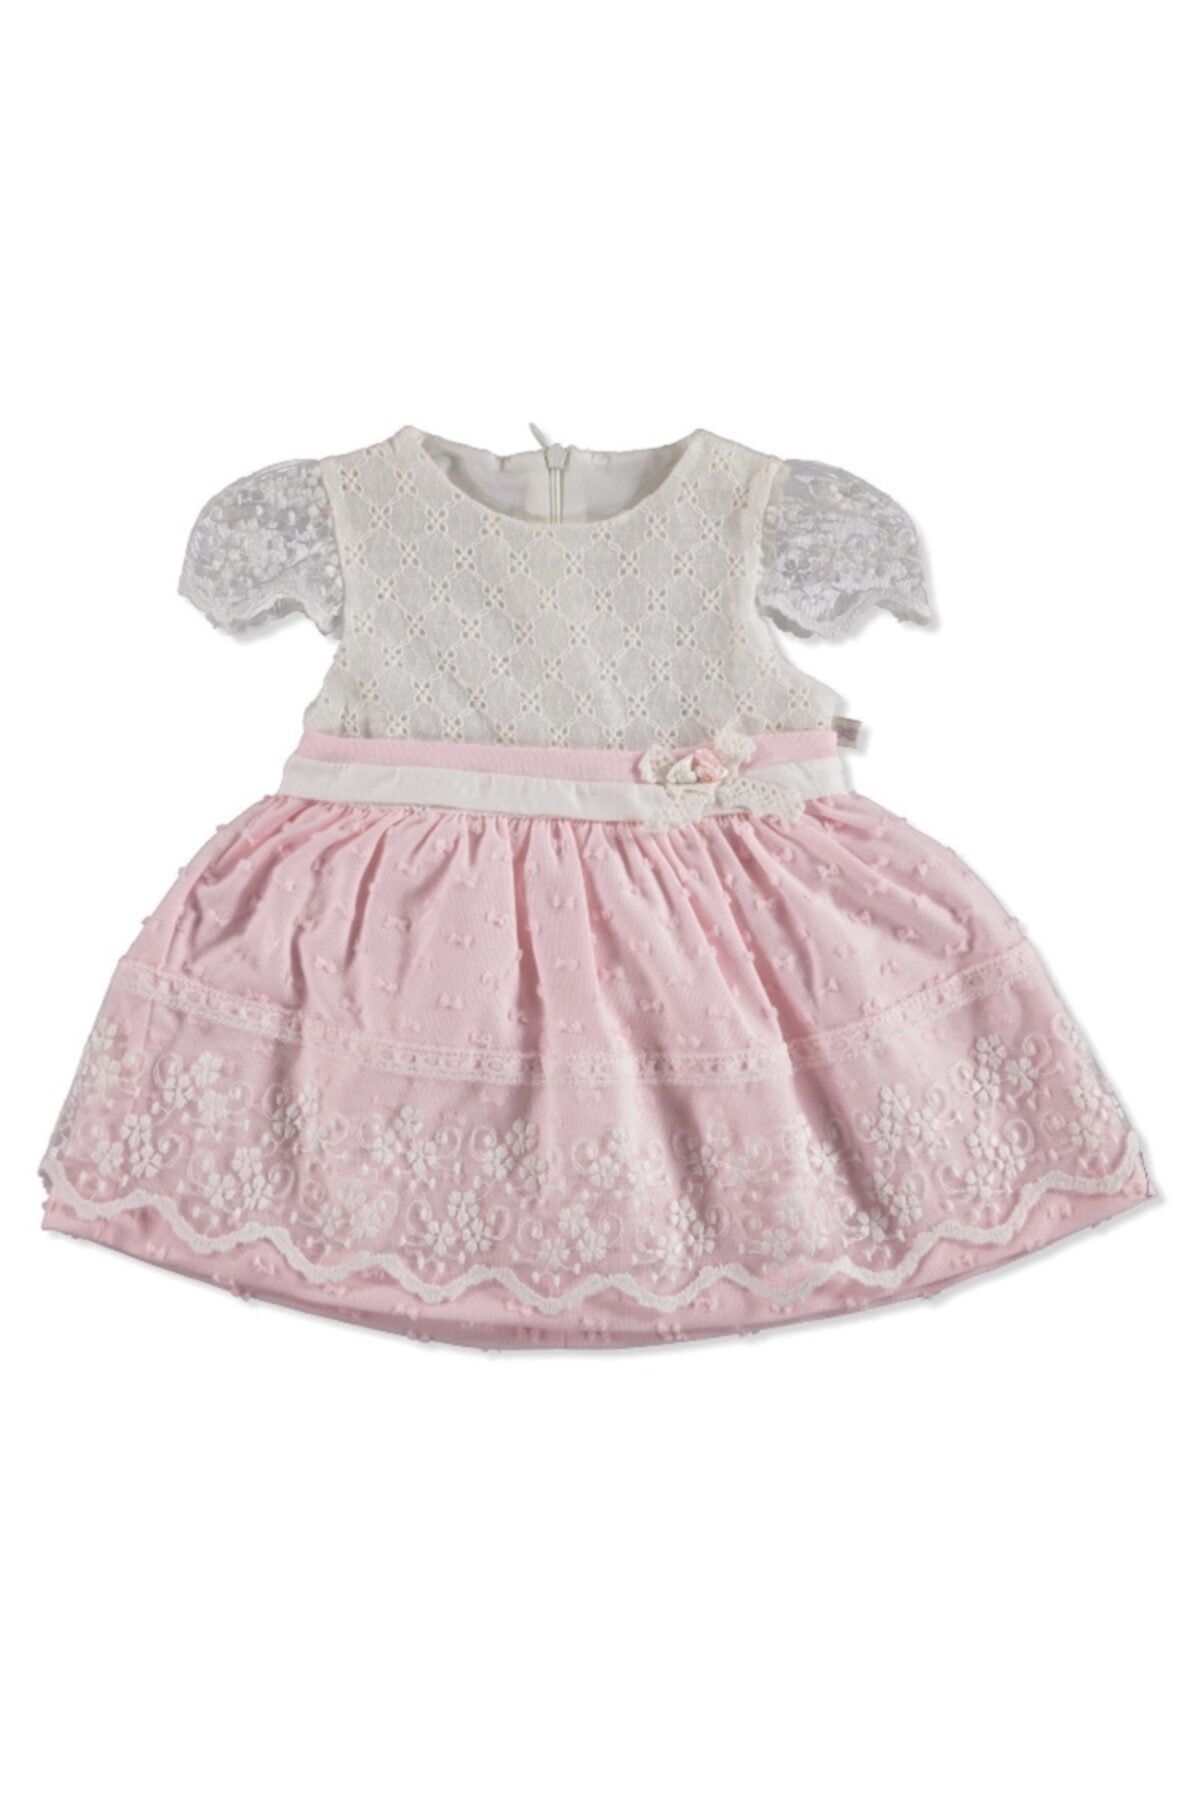 Mymio Kız Bebek Pembe Elbise